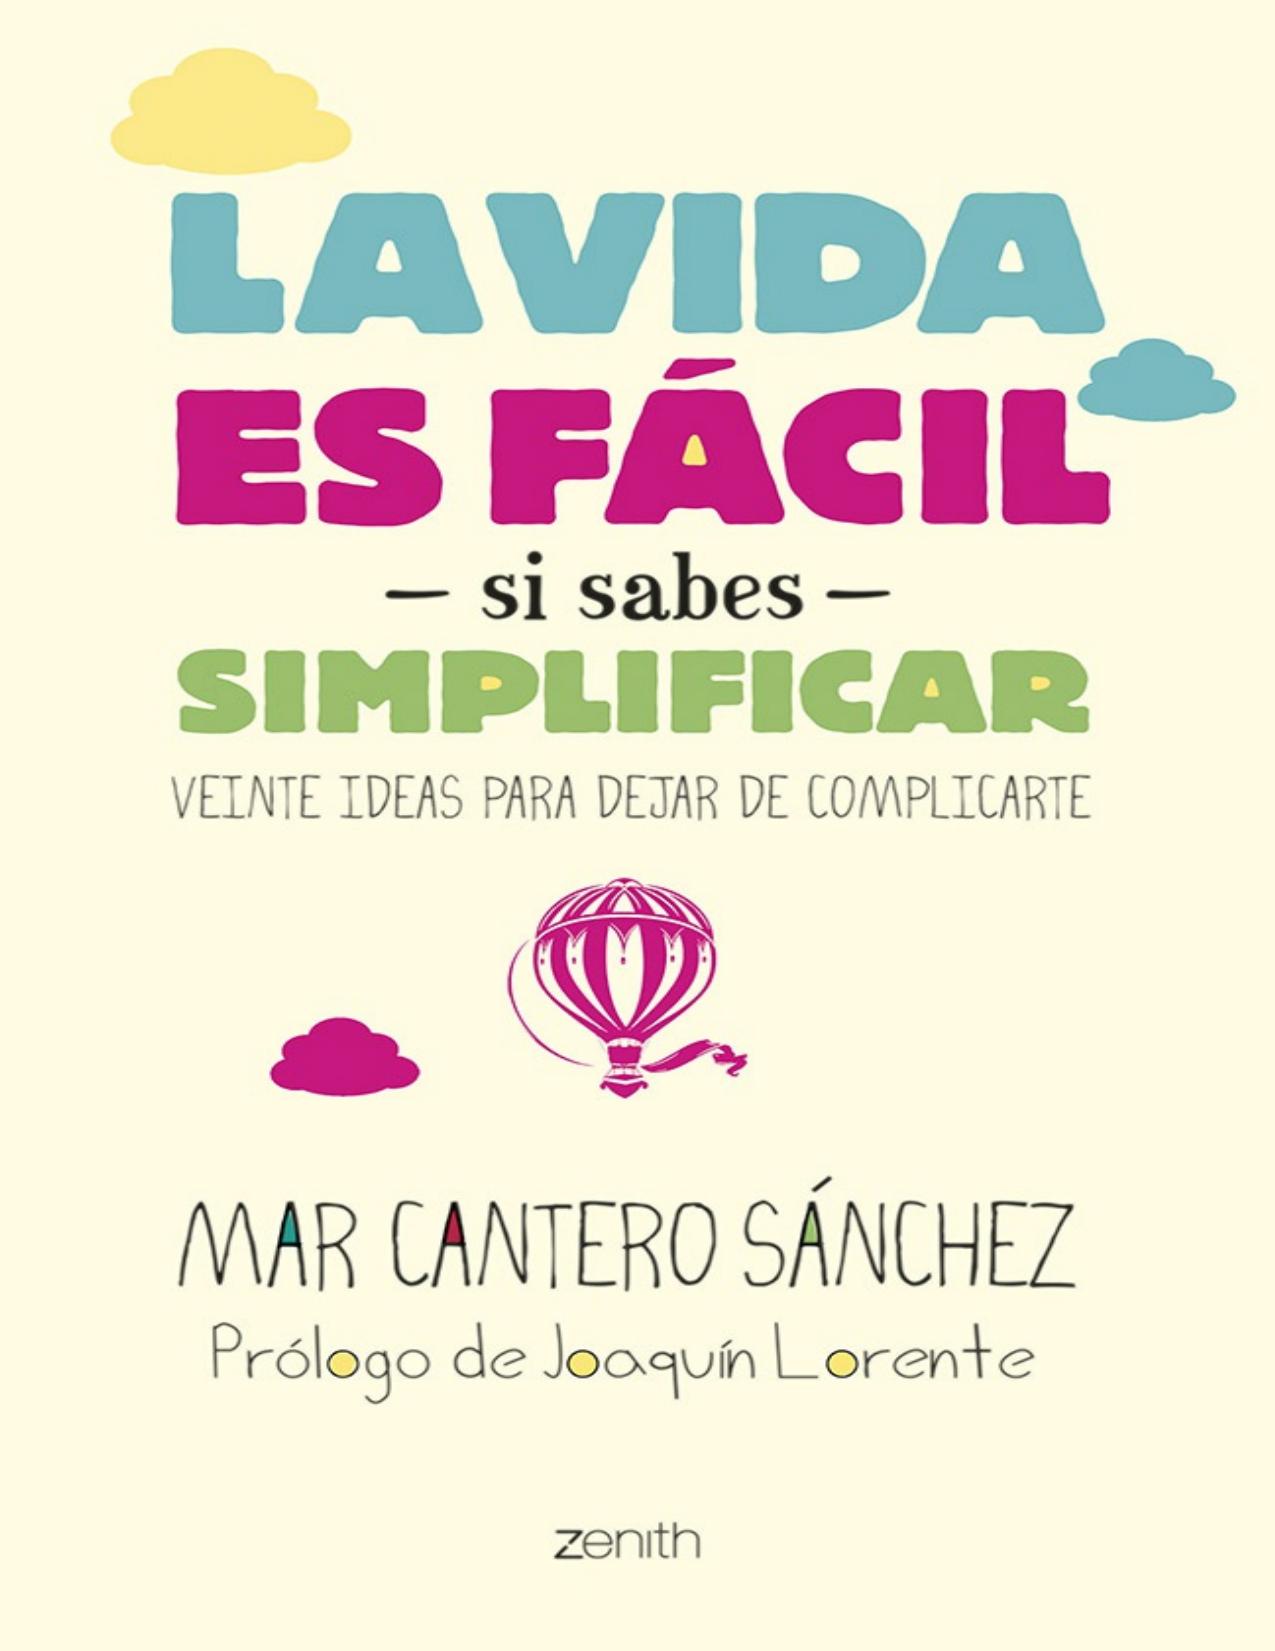 La vida es fácil si sabes simplificar: Veinte ideas para dejar de complicarte (Spanish Edition)